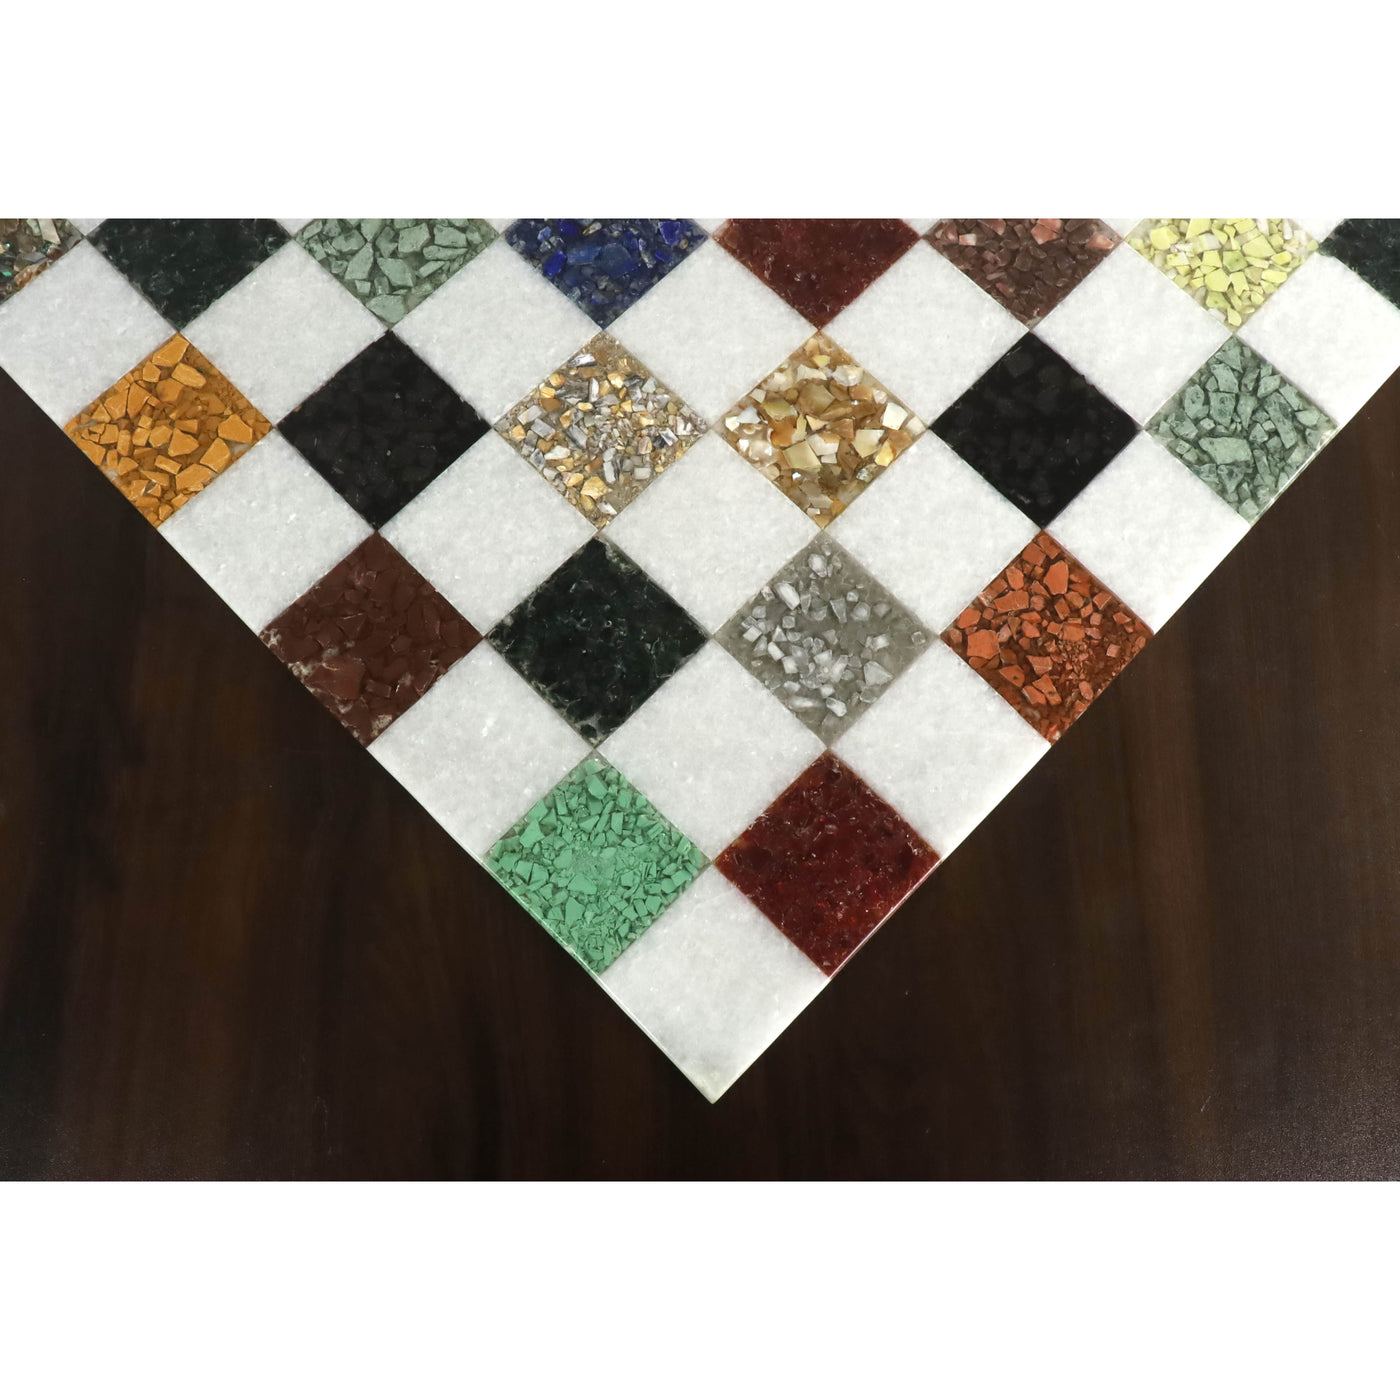 18'' Borderless Marble Luxury Chess Board-White & Multi Coloured Semi-Precious Stones